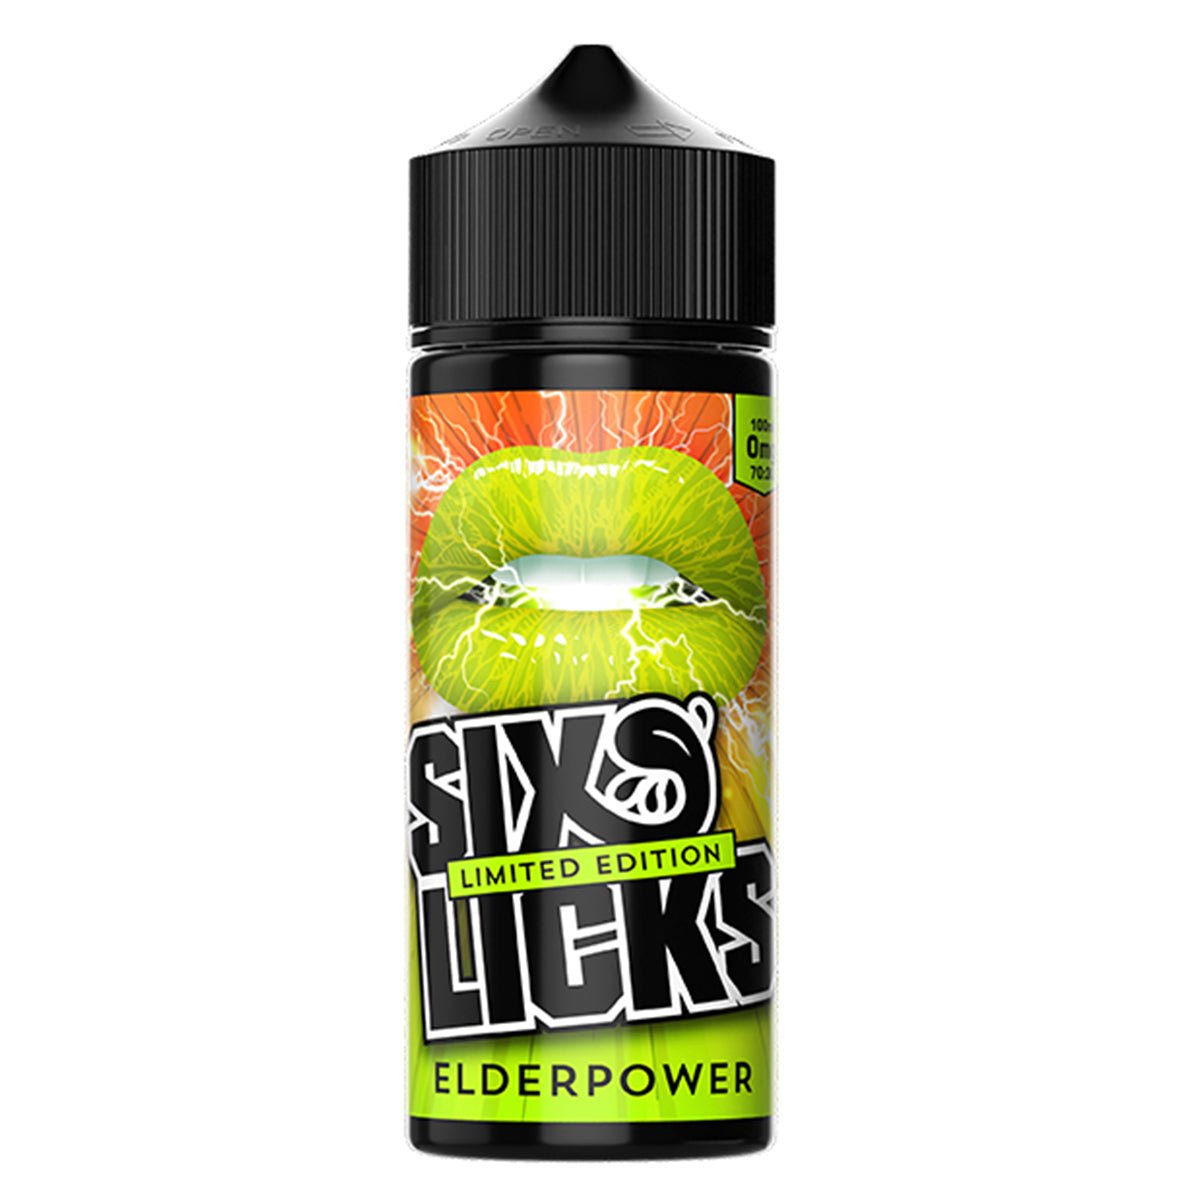 Elderpower 100ml Shortfill By Six Licks - Prime Vapes UK